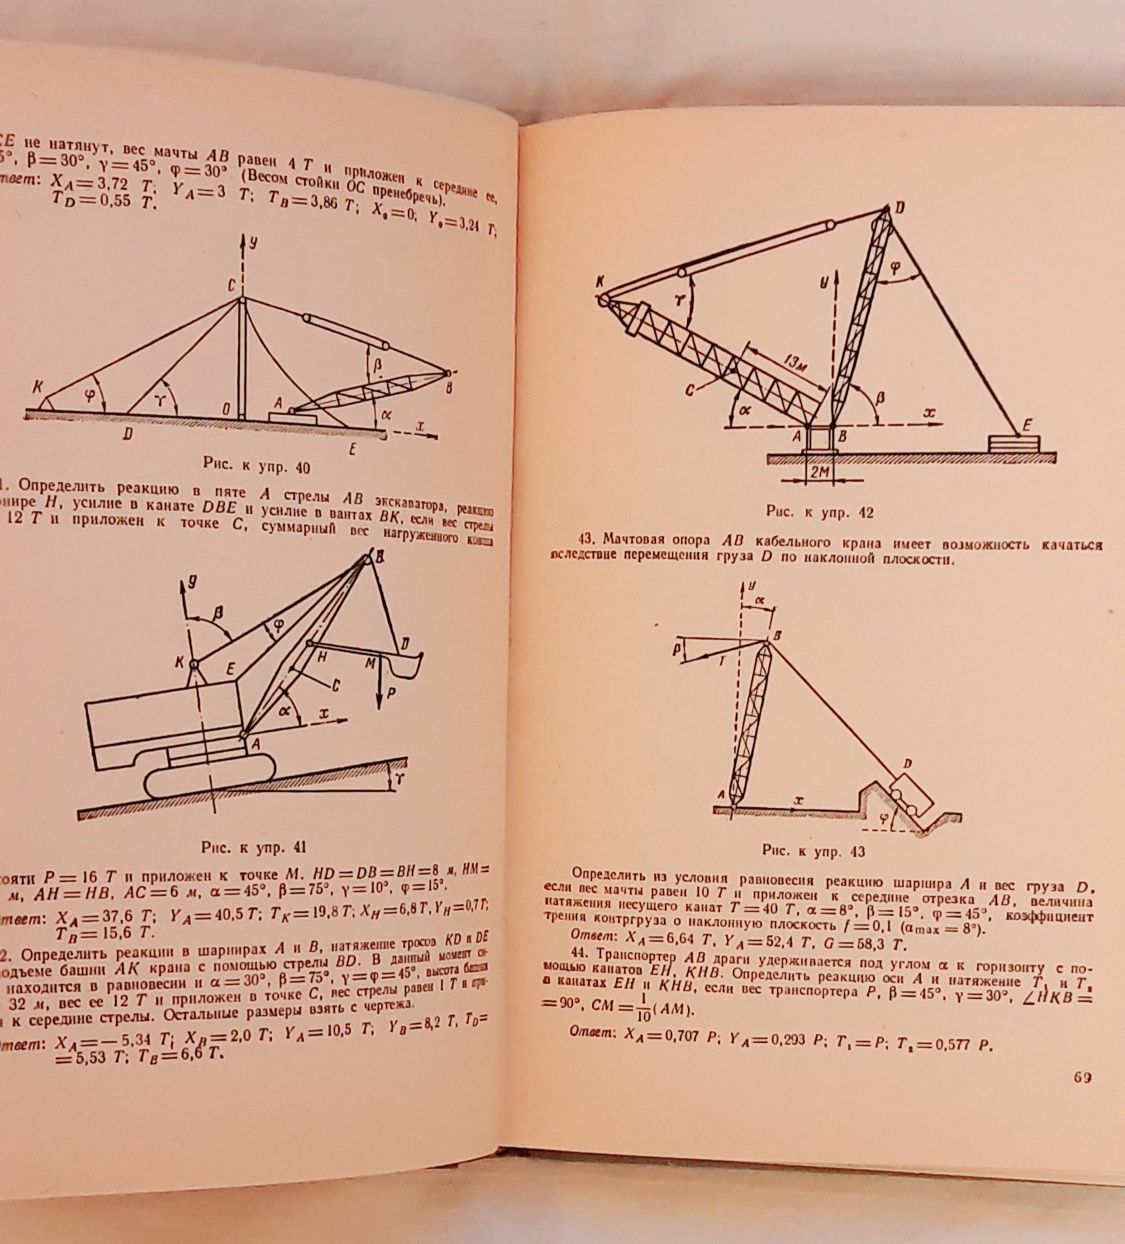 Книга Методика решения задач по теоретической механике, 1962 год